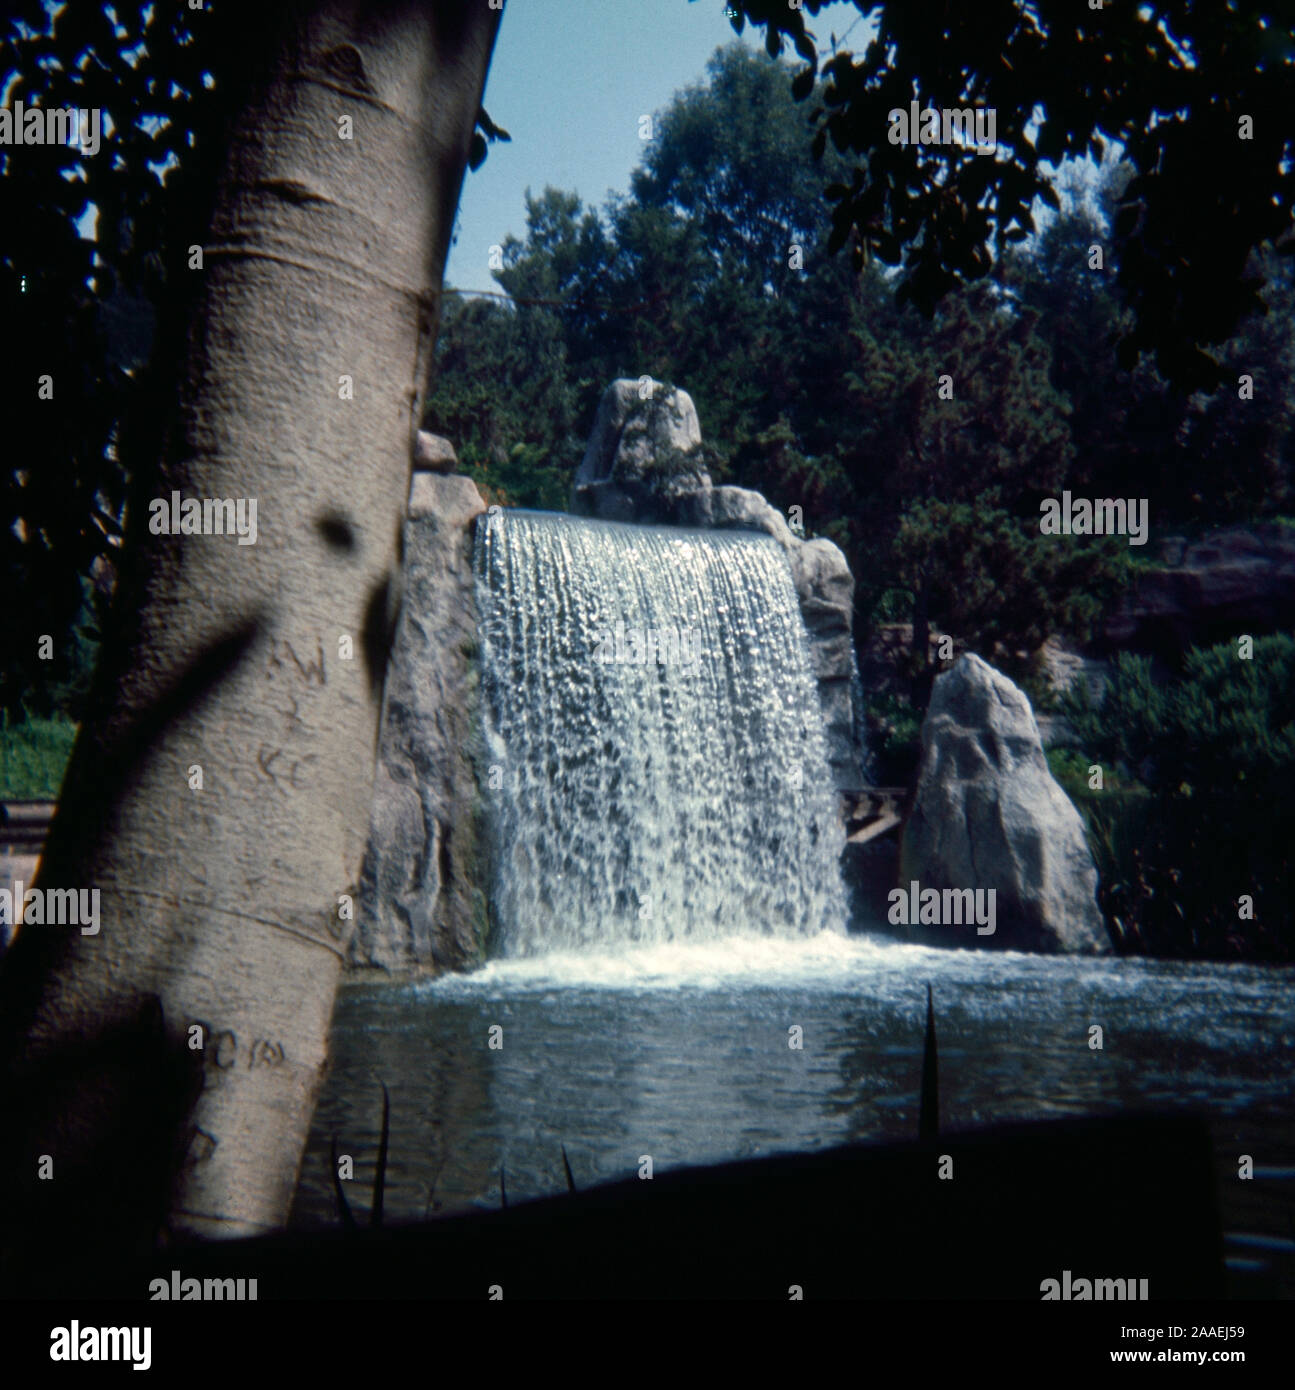 Jahrgang September 1972 Foto, Wasserfall im Disneyland Park in Anaheim, Kalifornien. Quelle: Original 35 mm Transparenz Stockfoto